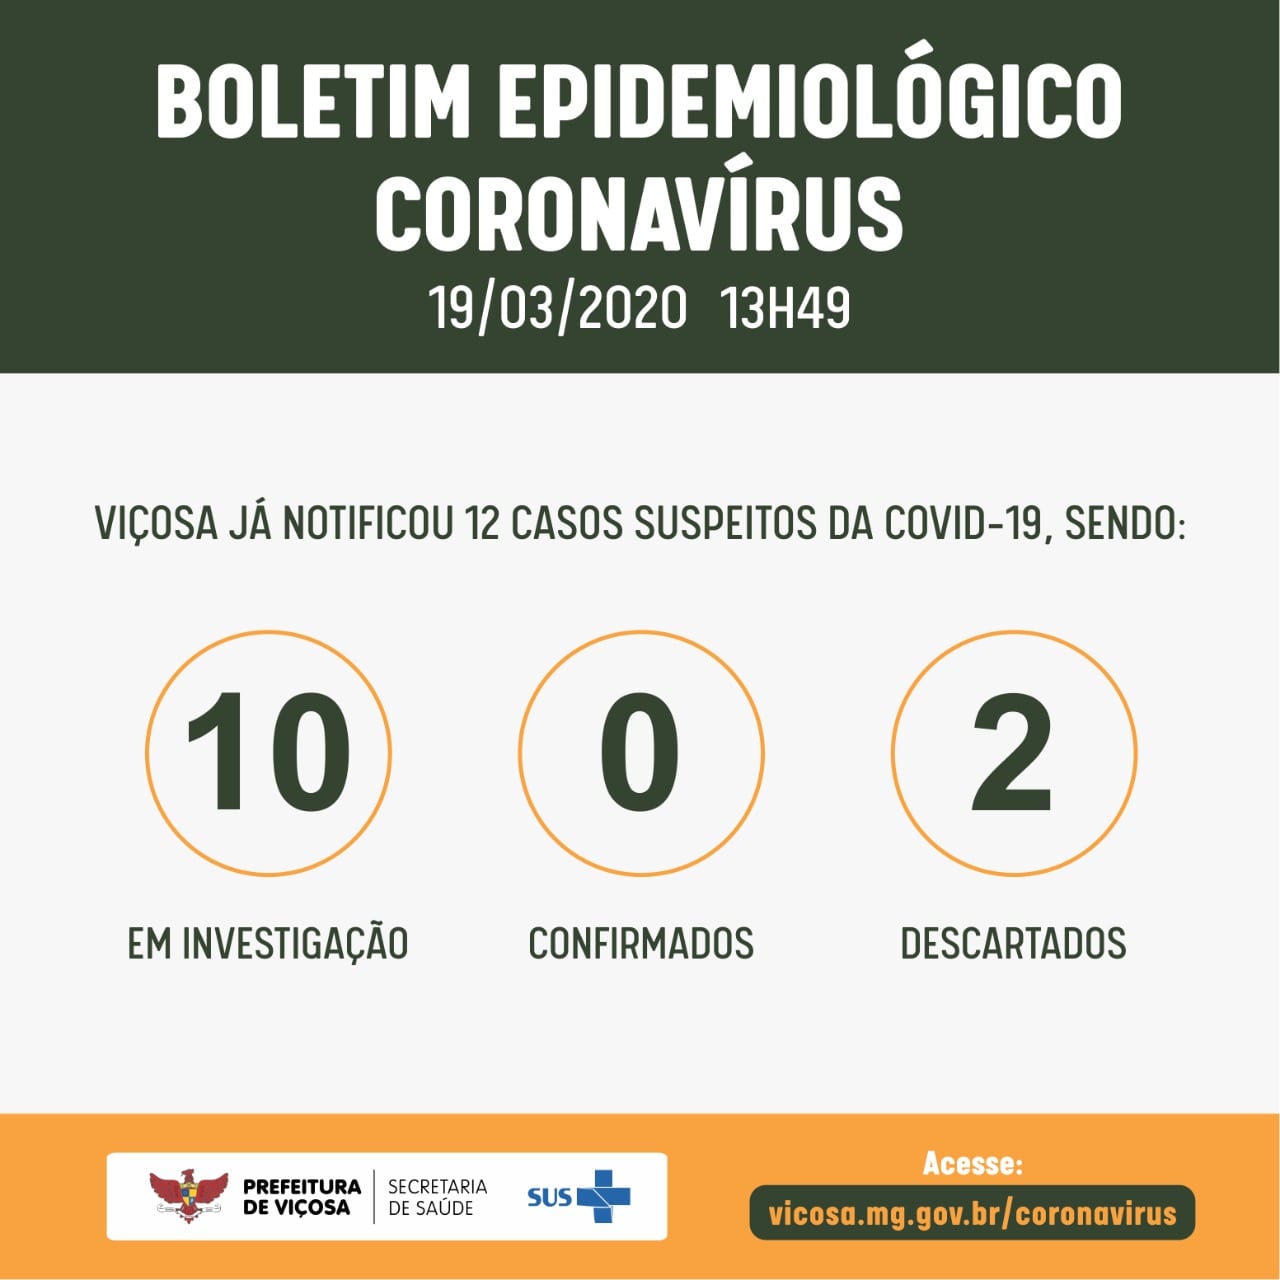 Viçosa registra 10 casos suspeitos em investigação do coronavírus